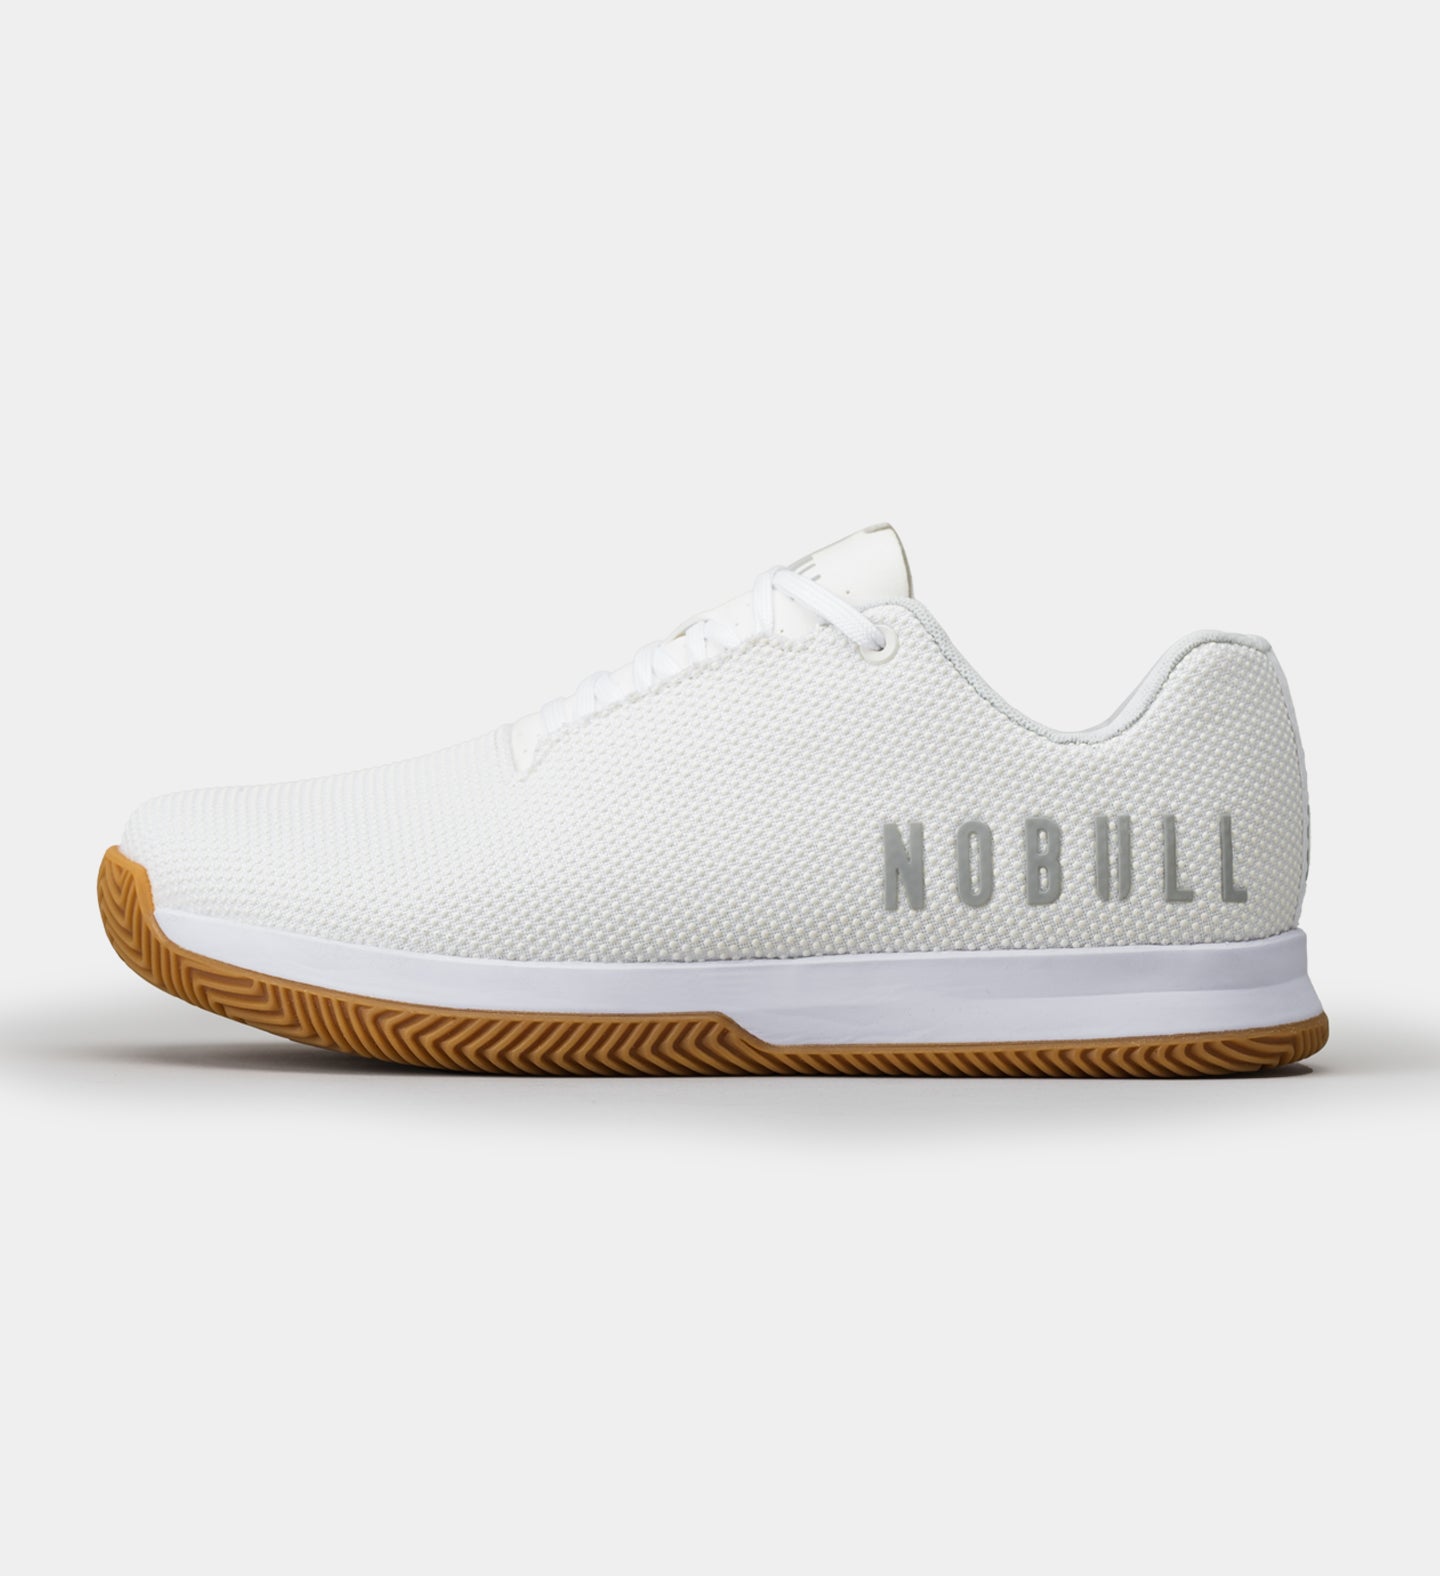 NOBULL - Men's Court Trainer - White - Size 13